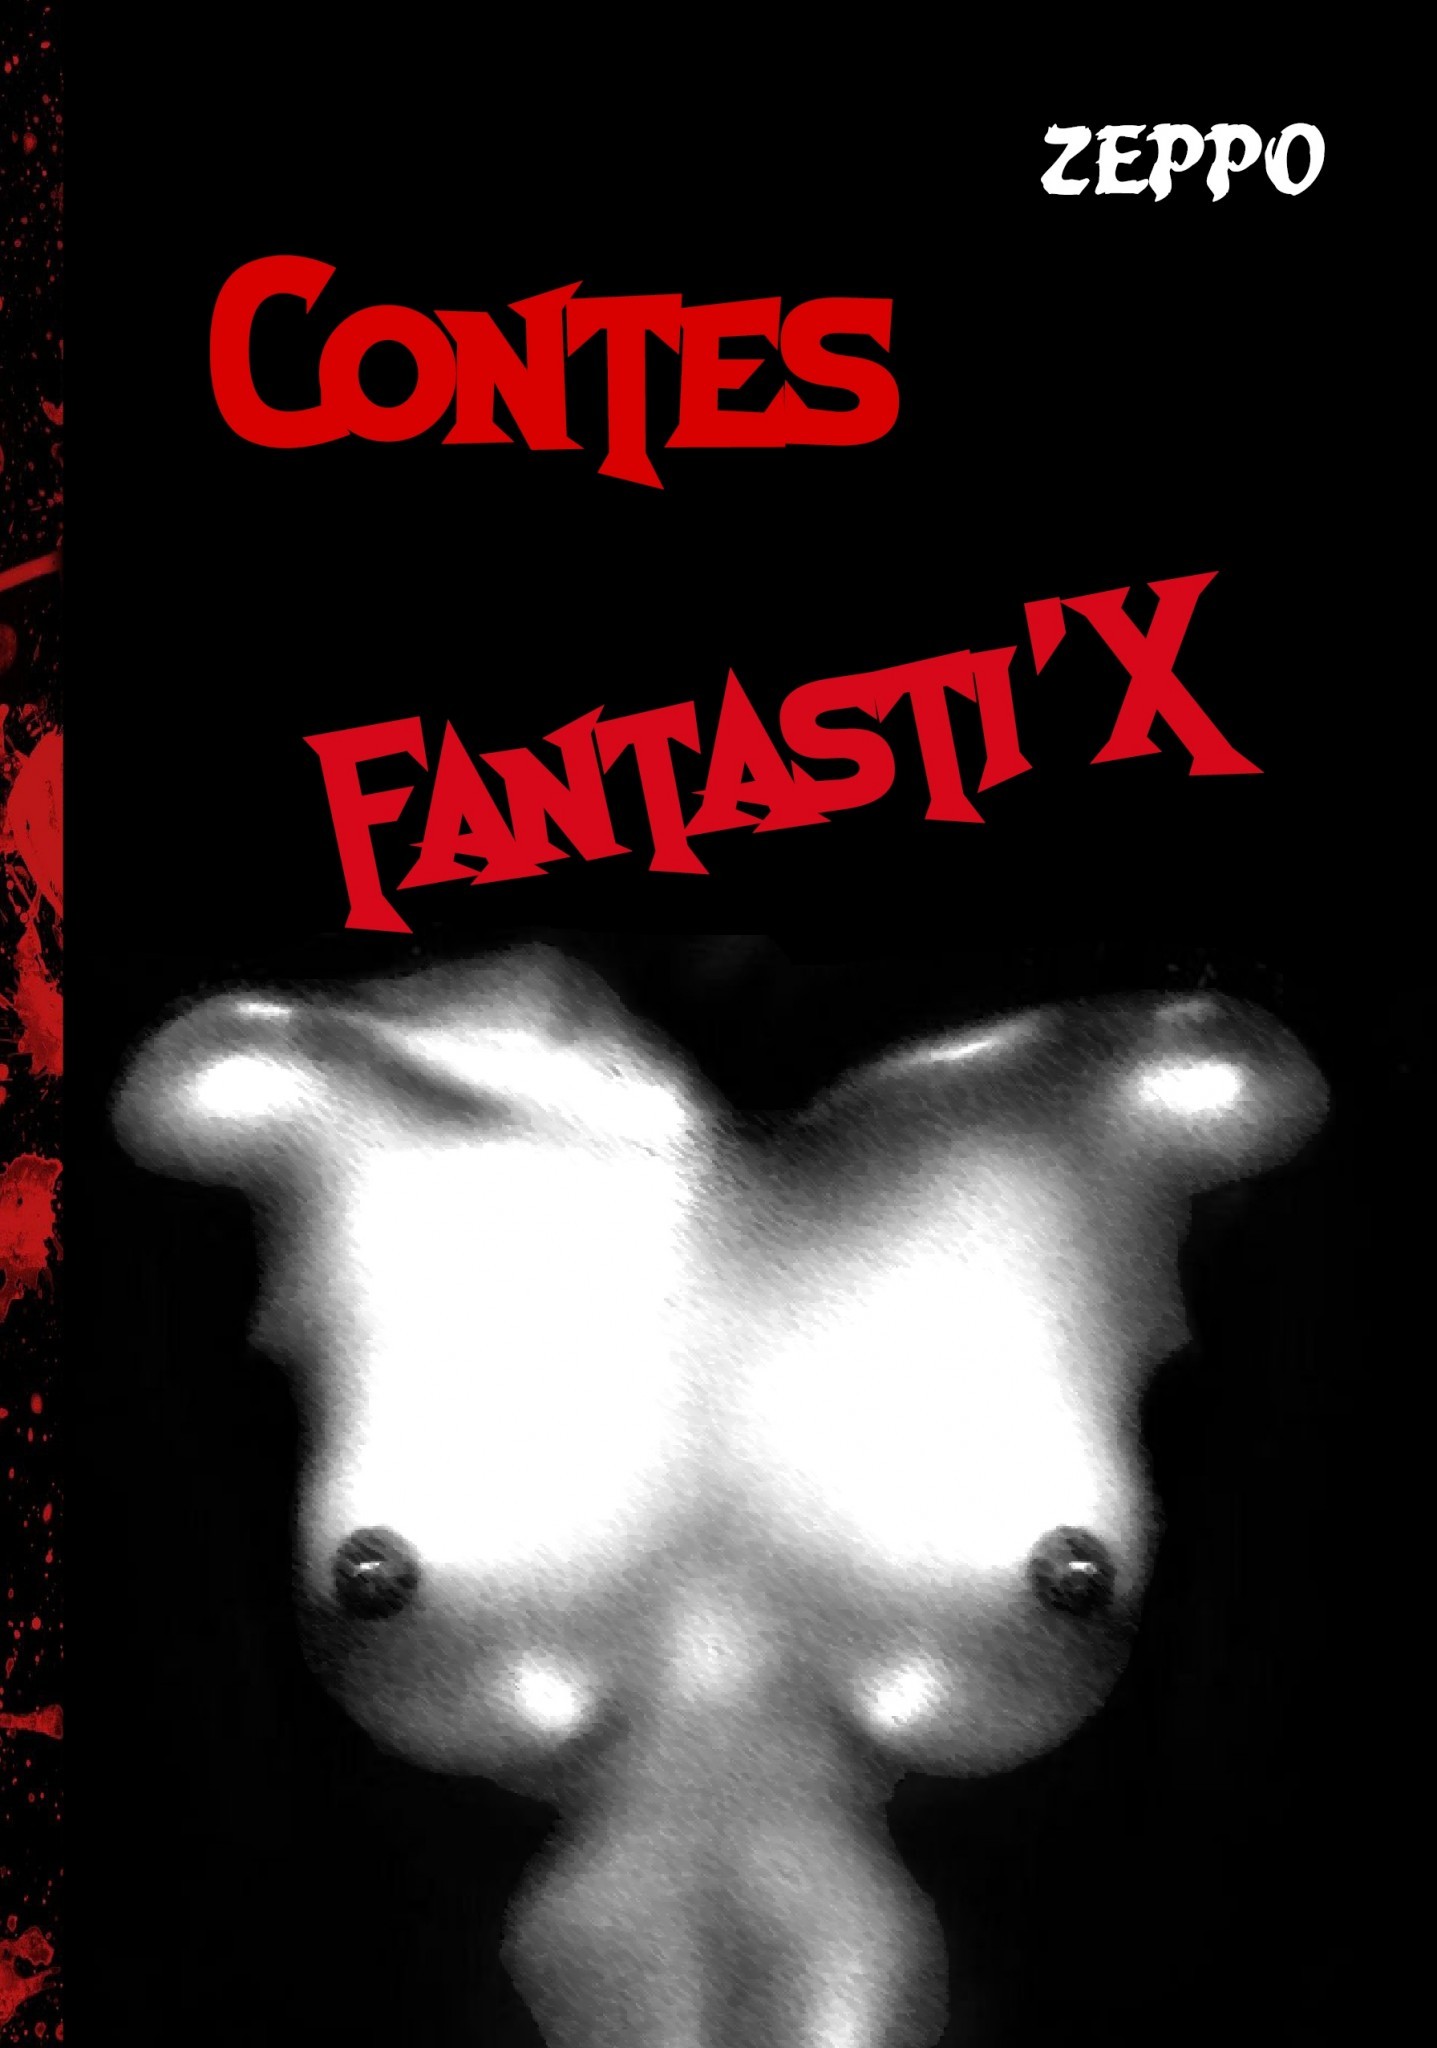 Contes FantastiX